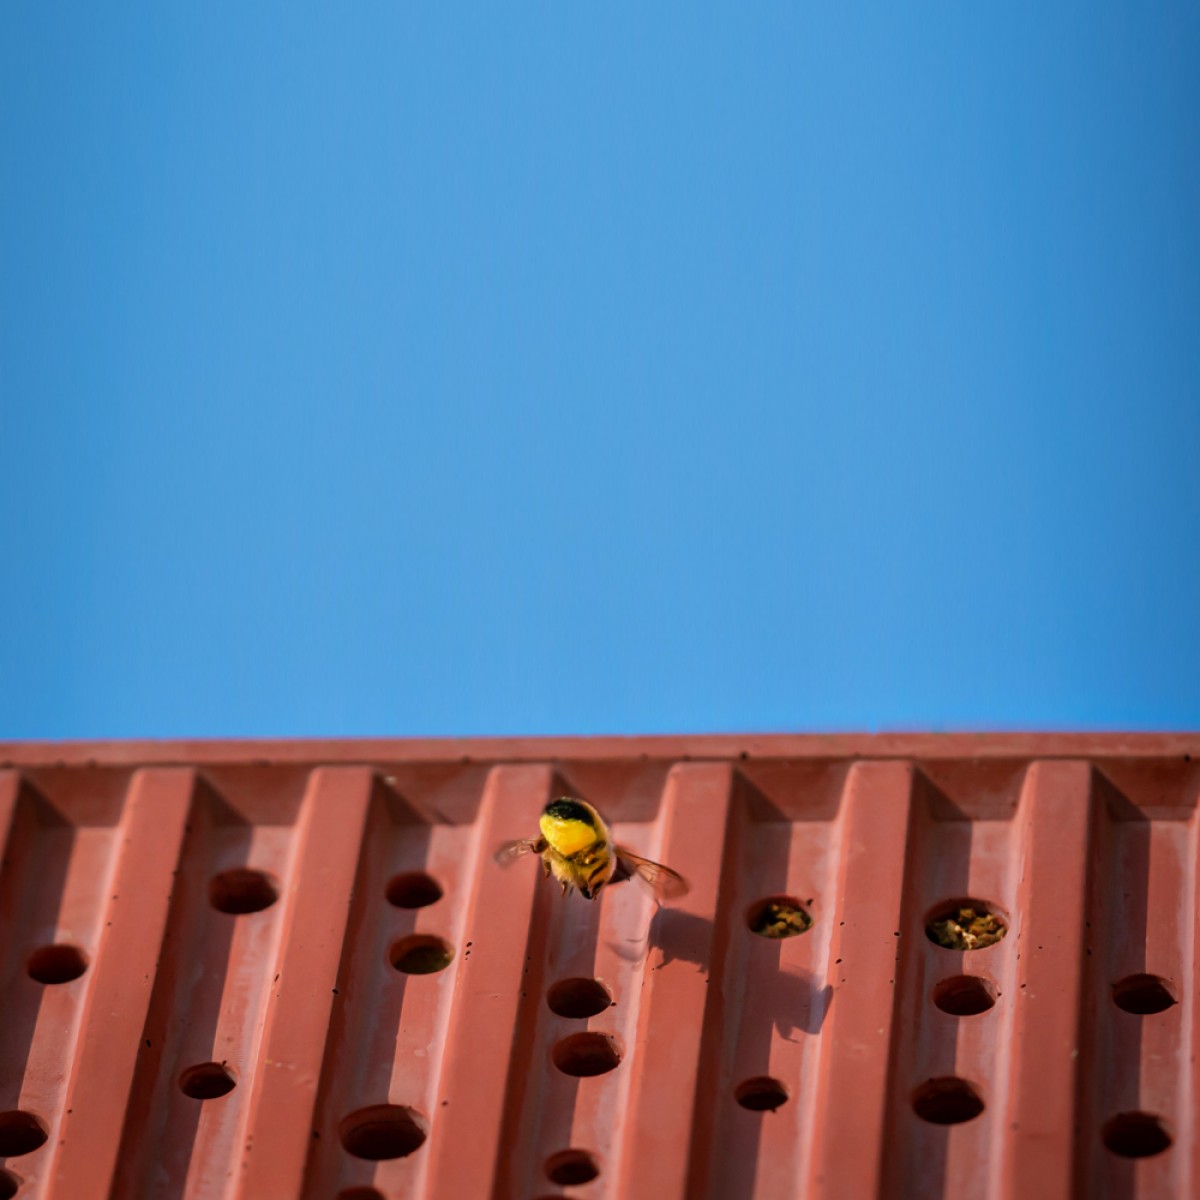 Bienenhotel aus Beton - beecontainer "Grün" im Überseecontainer-Look von Grellroth Design